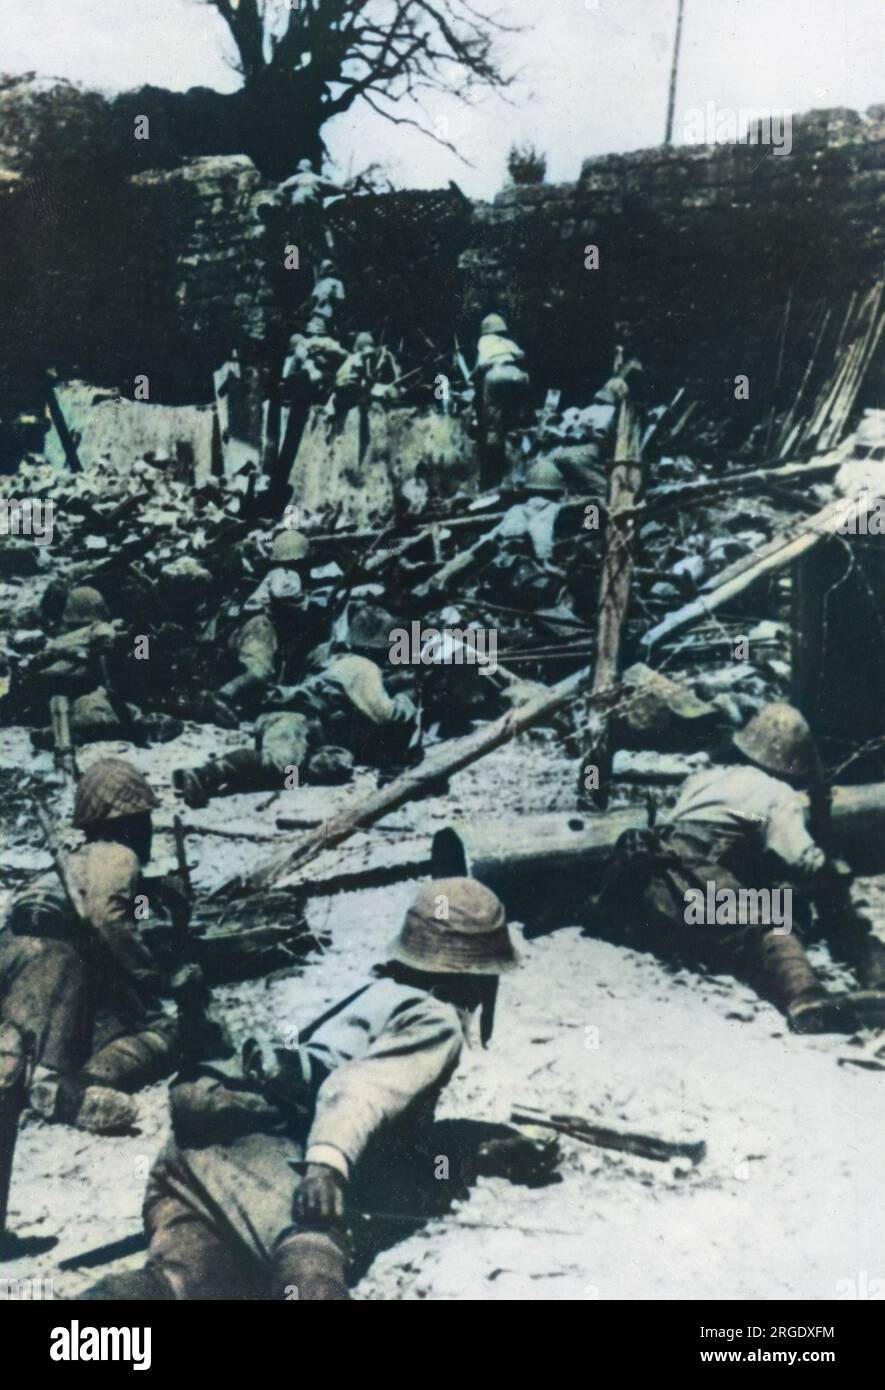 Les troupes japonaises lancent une attaque sur Chungking (Chongqing) pendant la Seconde Guerre sino-japonaise. À partir de la fin de 1938, Chungking devient la base et la capitale provisoire du KMT de Tchang Kaï-Chek. Malgré de nombreux bombardements aériens et des tentatives de prise de la ville, elle resta ferme jusqu'à la fin de la guerre. Banque D'Images